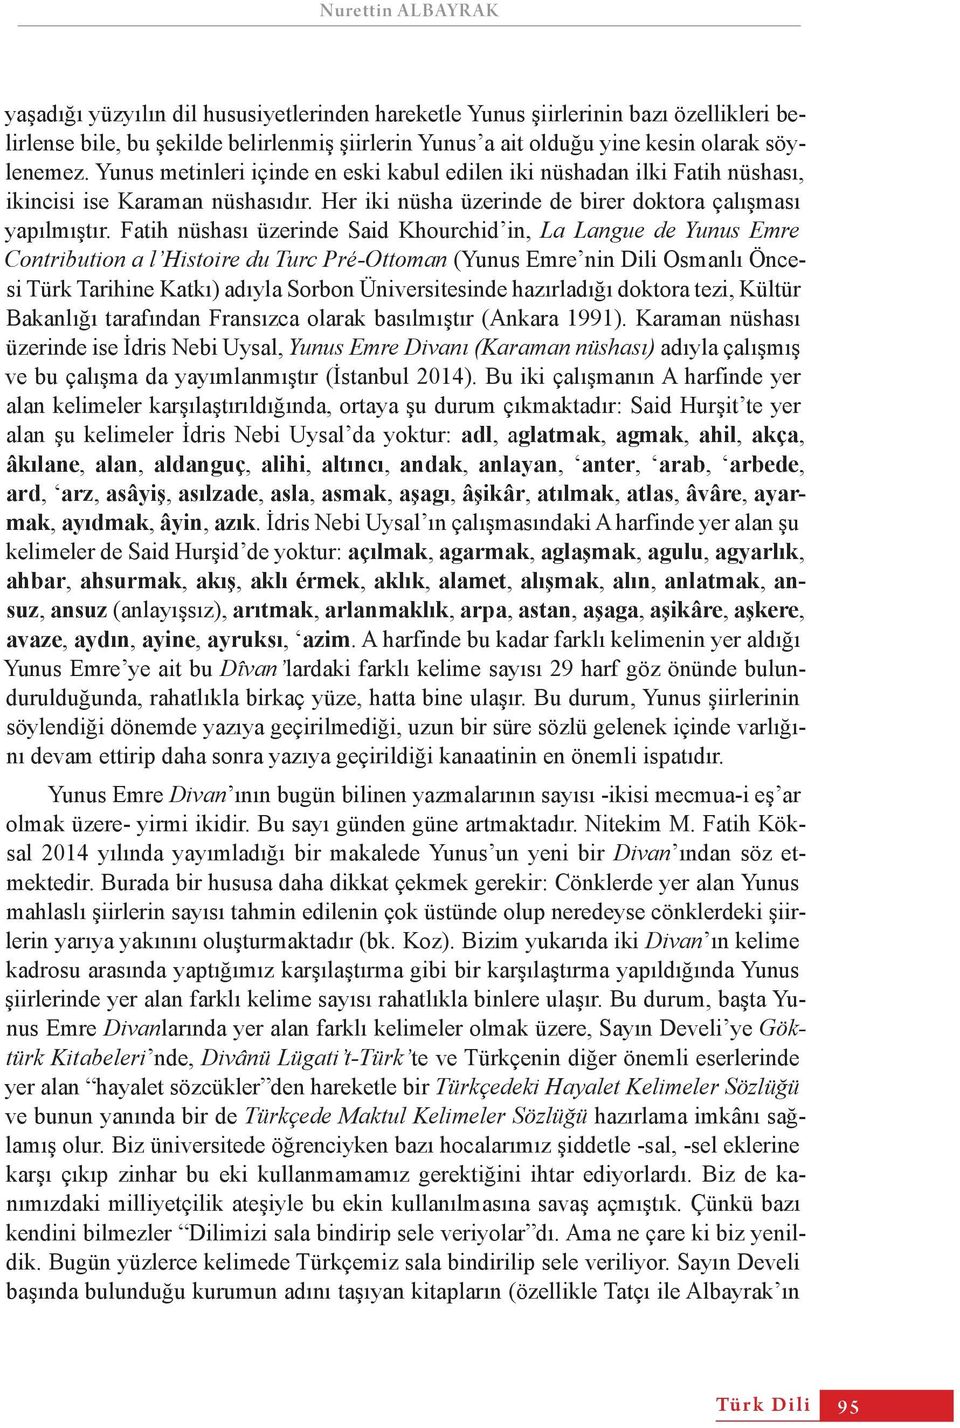 Fatih nüshası üzerinde Said Khourchid in, La Langue de Yunus Emre Contribution a l Histoire du Turc Pré-Ottoman (Yunus Emre nin Dili Osmanlı Öncesi Türk Tarihine Katkı) adıyla Sorbon Üniversitesinde